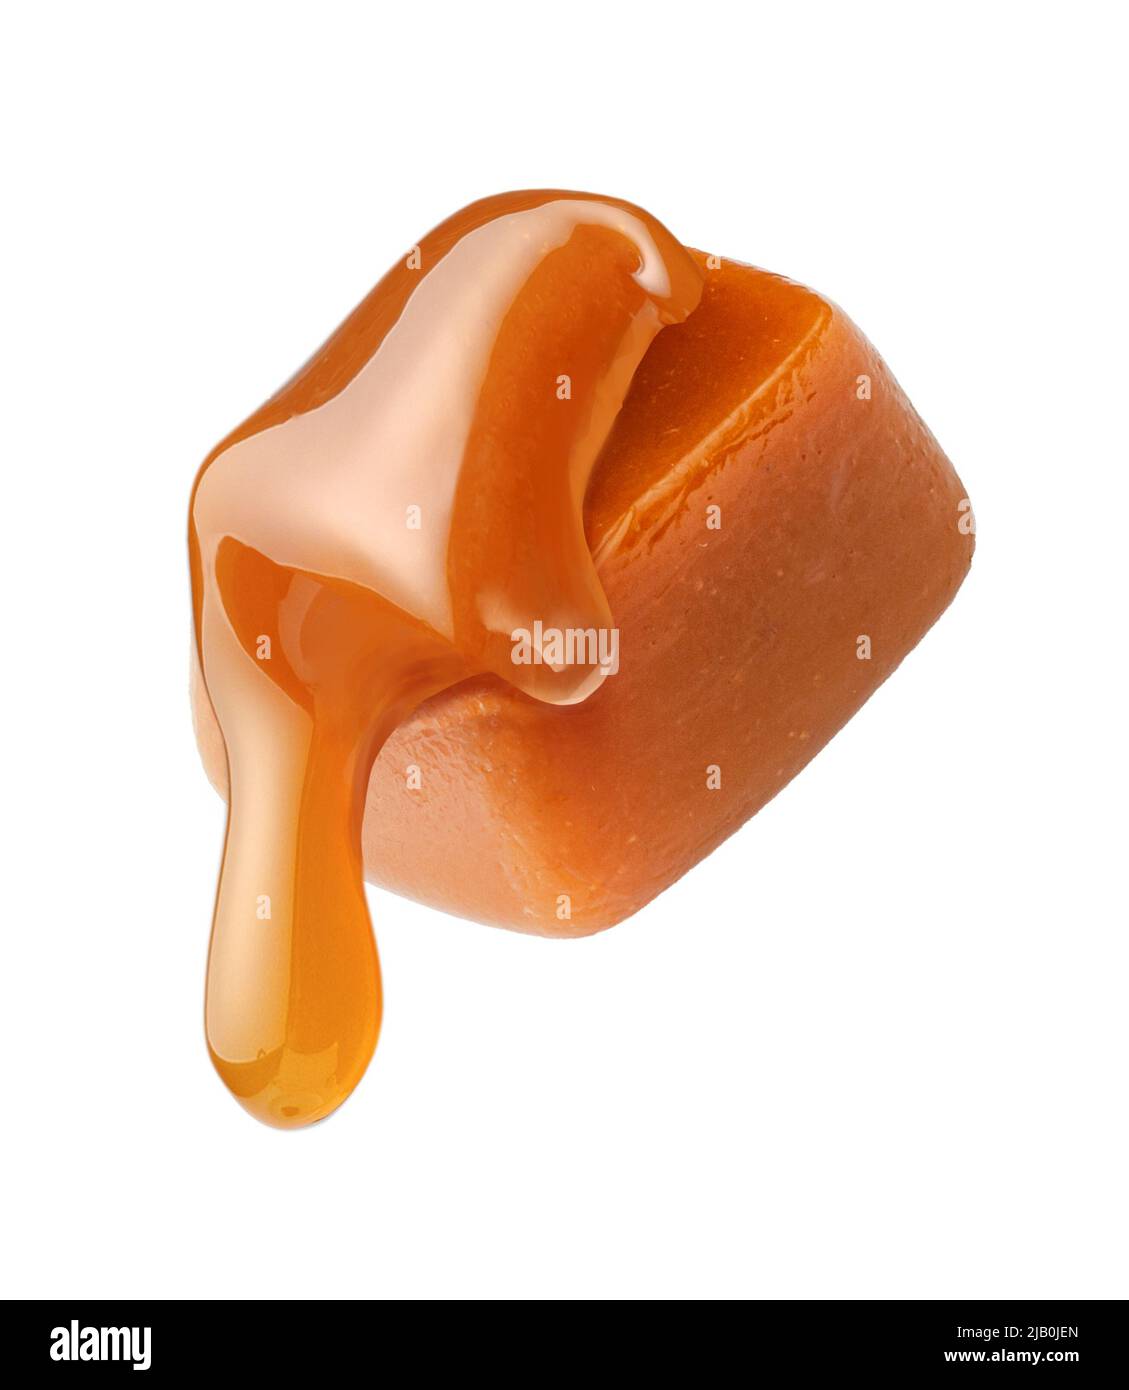 Salsa di caramello che scorre su cubo di caramello isolato su sfondo bianco. Caramella al caramello con caramello liquido. Foto Stock